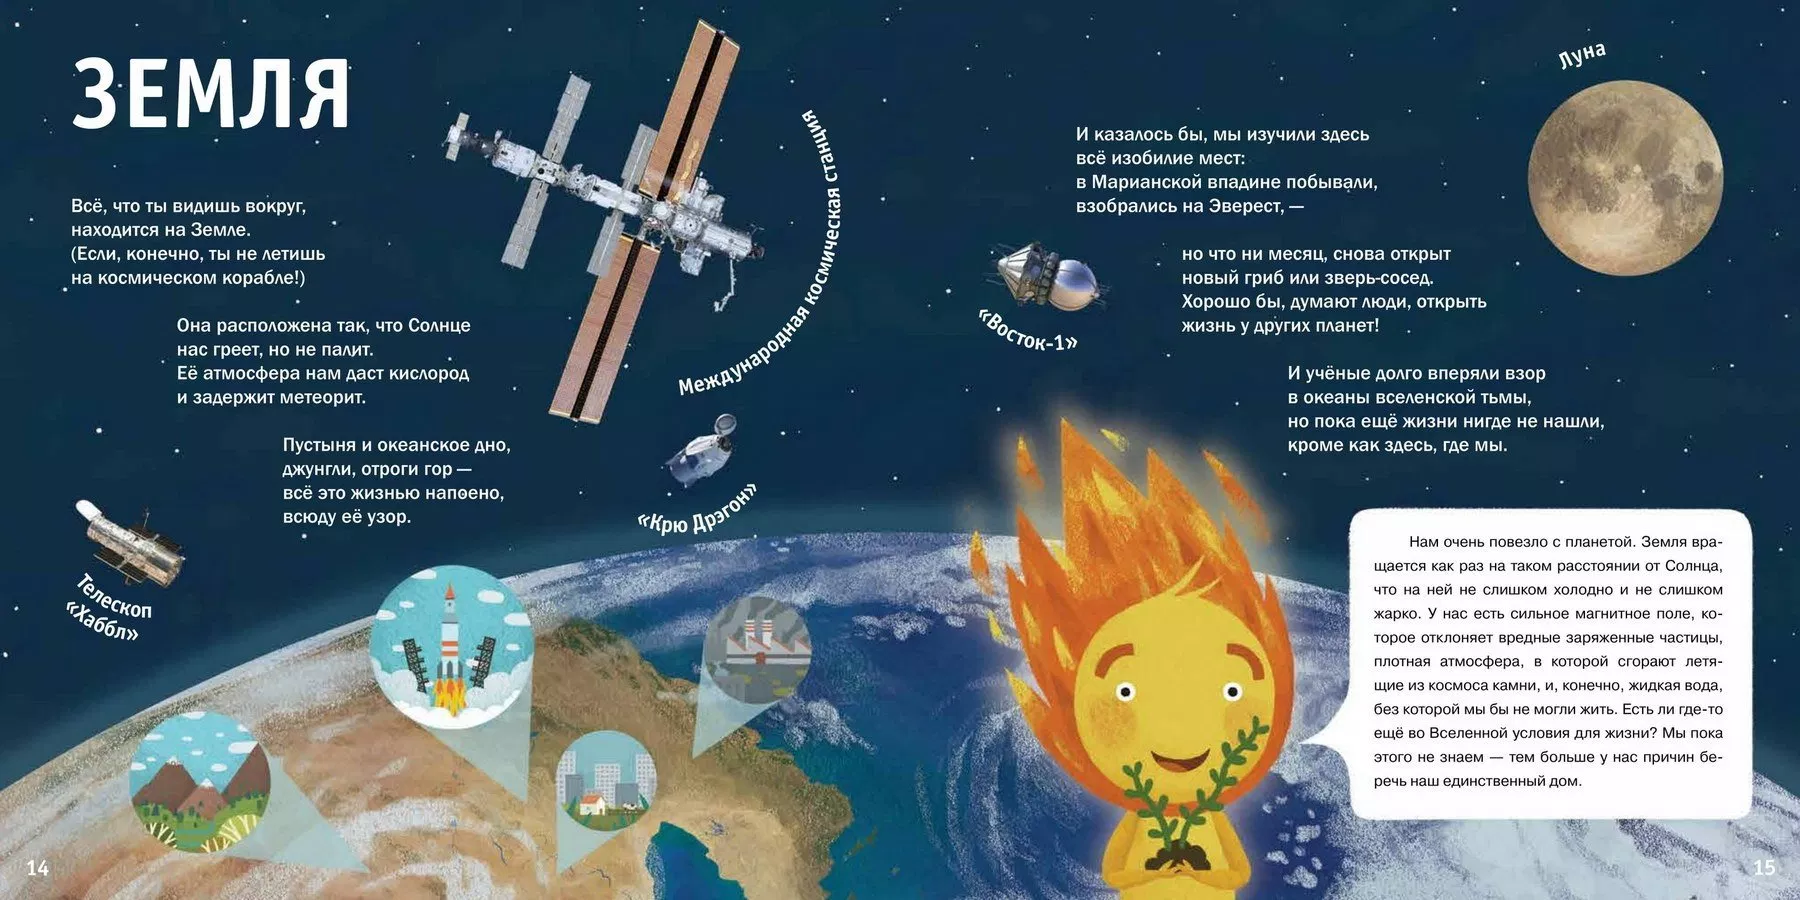 Короткий стих про планеты. Стих о планетах солнечной системы для детей 6-7. Стихи о планетах для детей. Стихотворение о планетах для детей. Стих про планеты для детей.